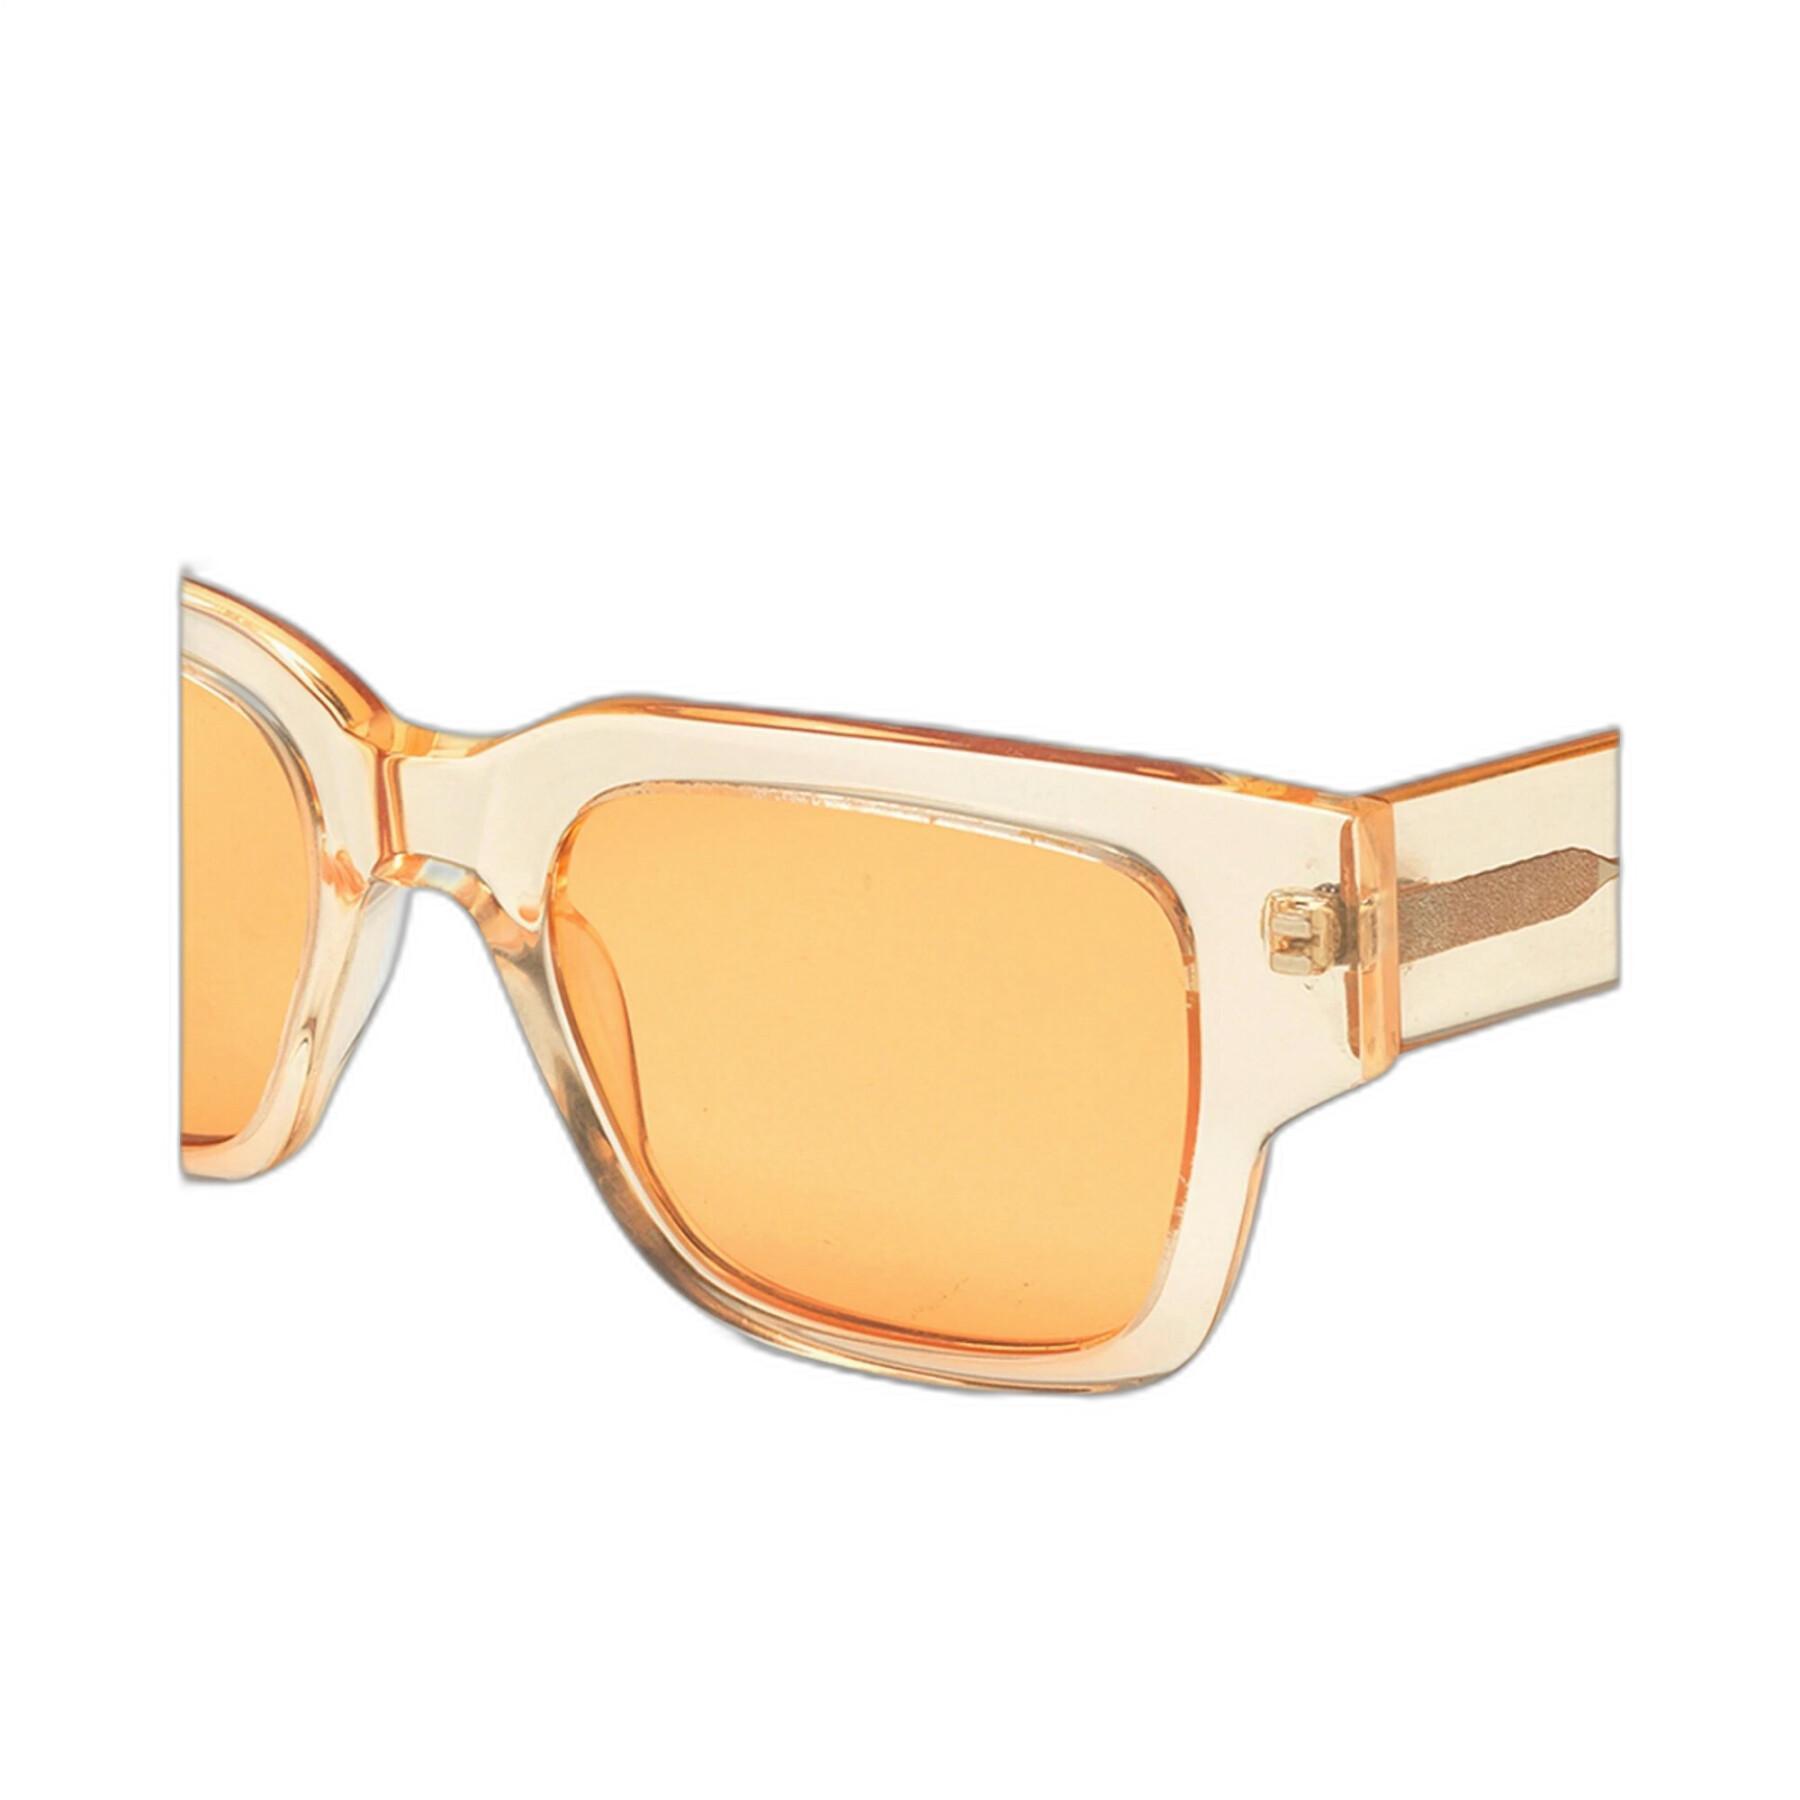 Óculos escuros Colorful Standard 02 sunny orange/orange